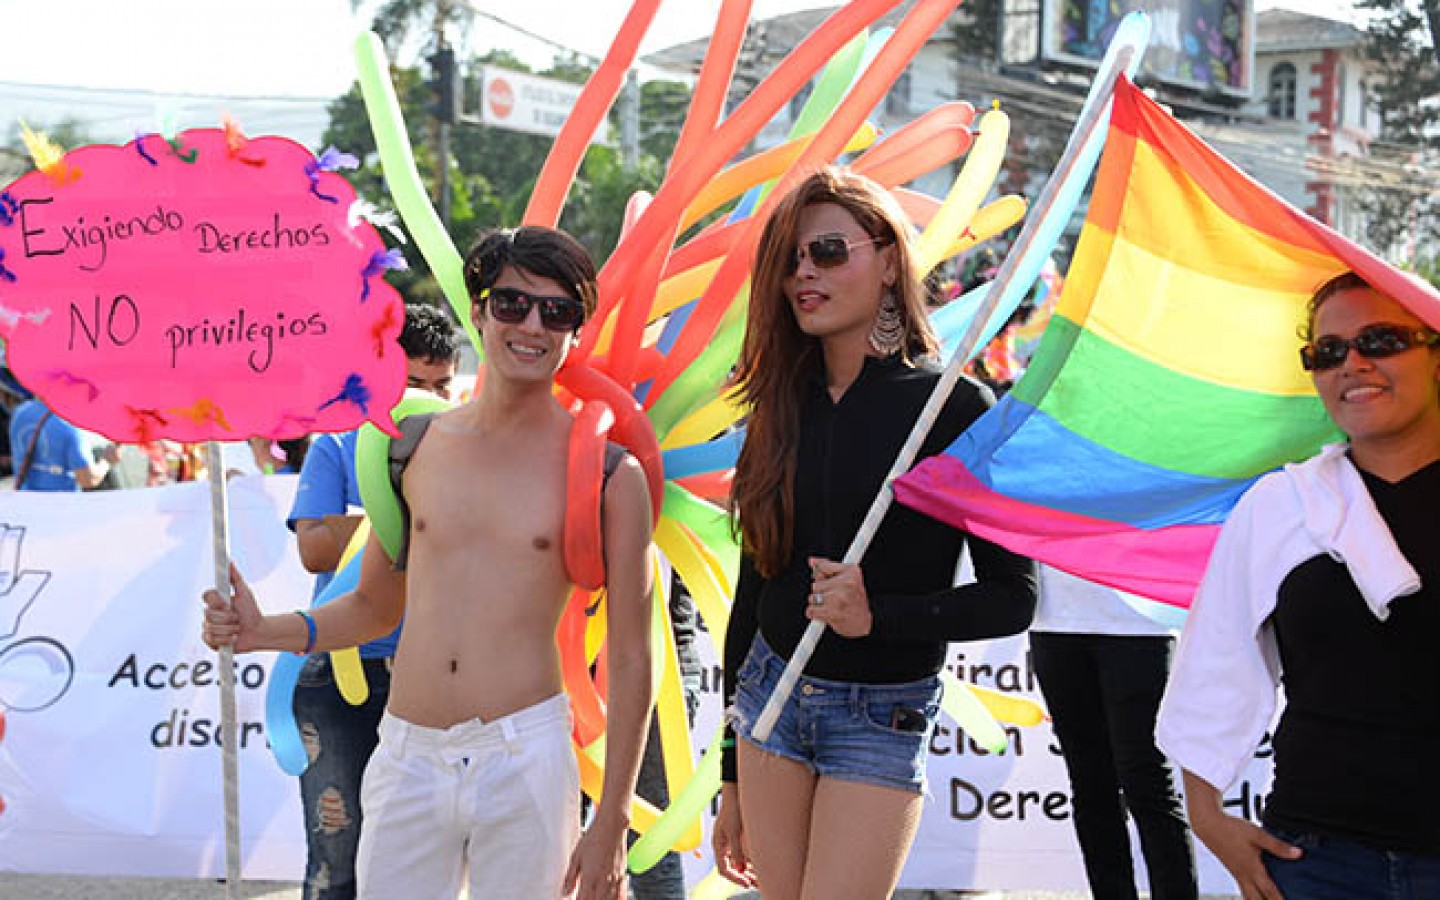 Arcoiris fights tirelessly for LGBT rights in Honduras